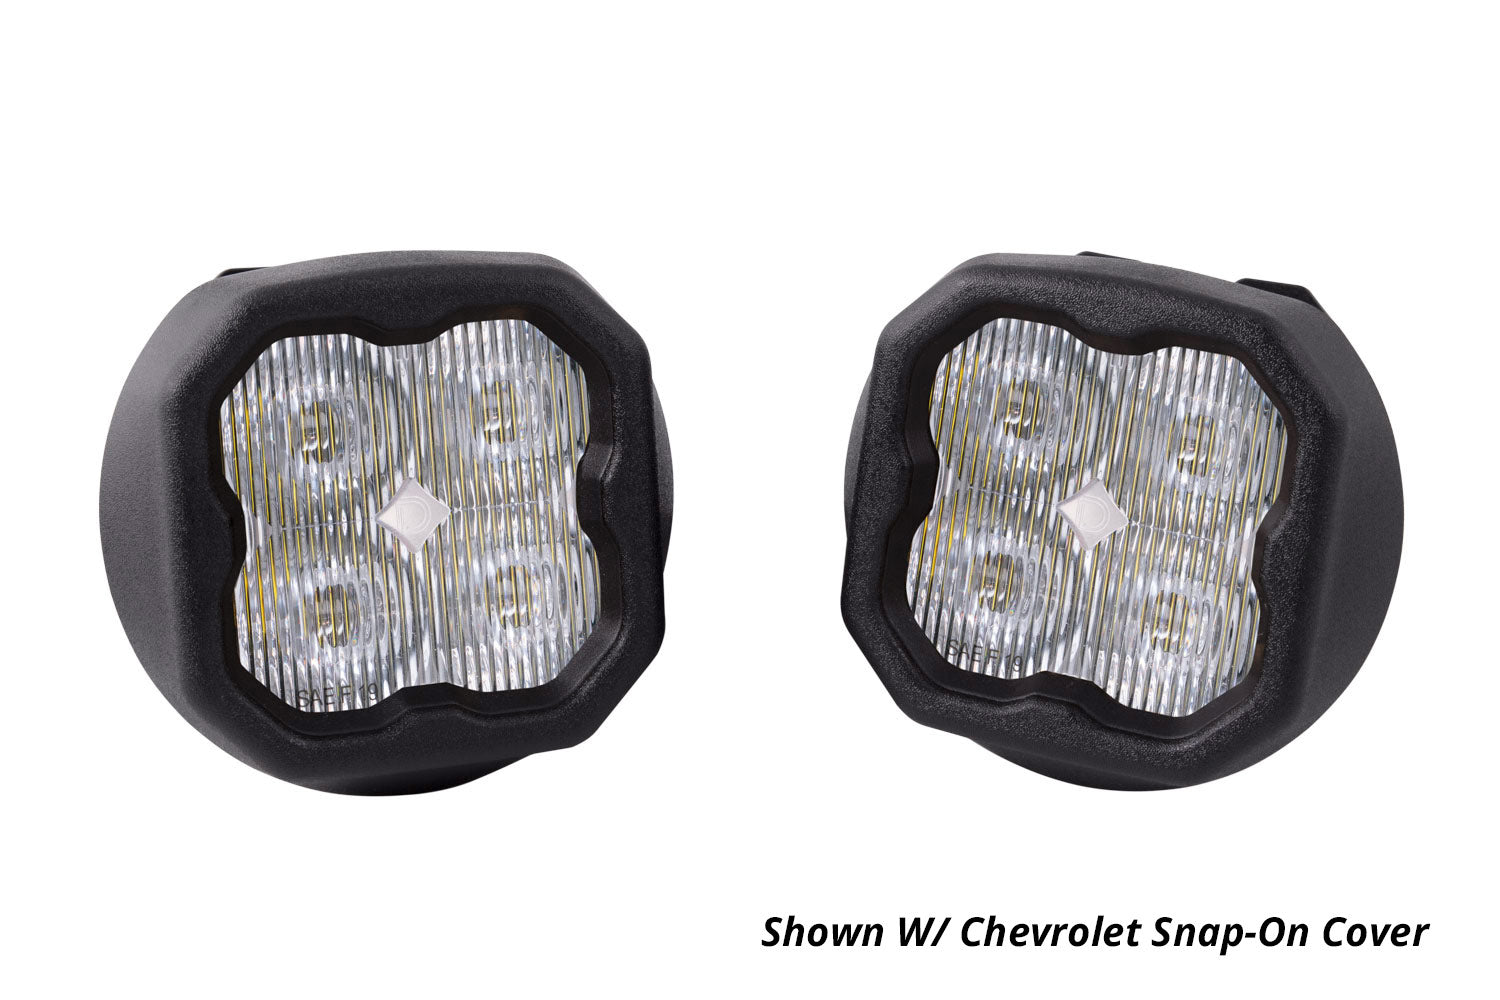 SS3 LED Fog Light Kit for 2015-2020 GMC Canyon White SAE/DOT Driving Sport w/ Backlight Diode Dynamics